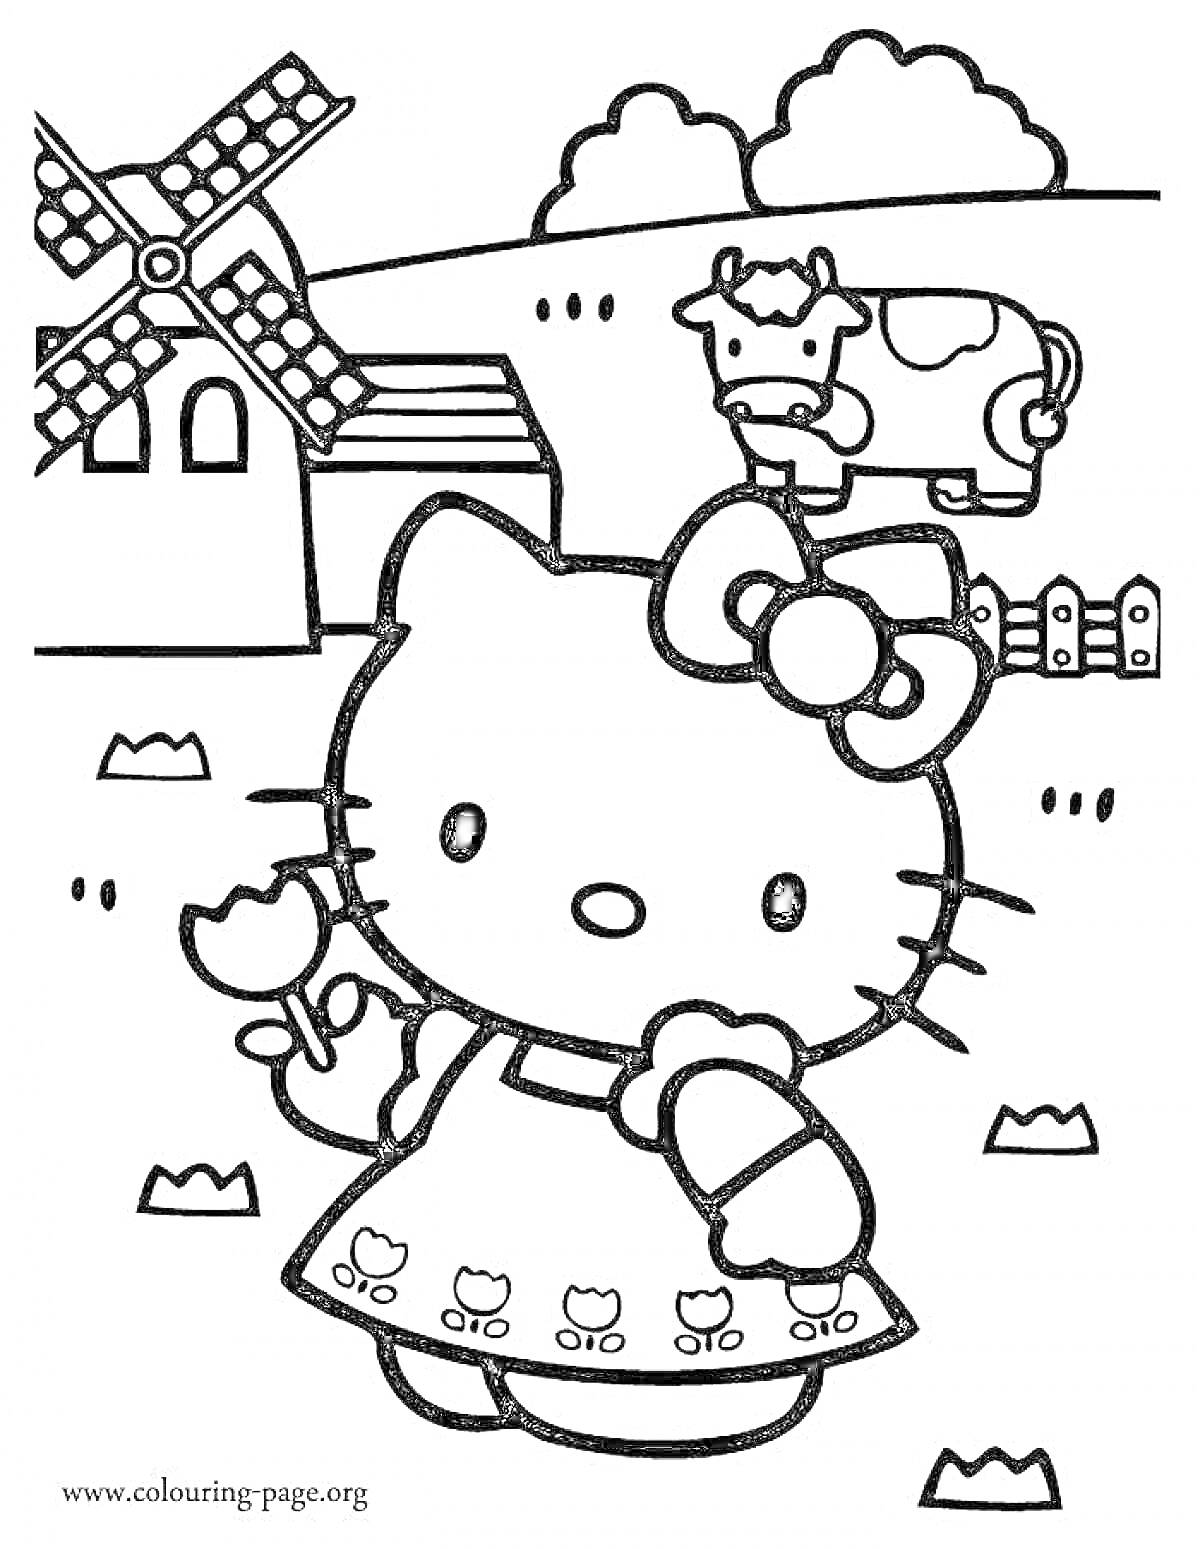 Картинка для раскраски с Хеллоу Китти, стоящей на лугу. В руках Хеллоу Китти держит цветок, она одета в платье с изображением цветков. На заднем плане расположена корова, дом и ветряная мельница.